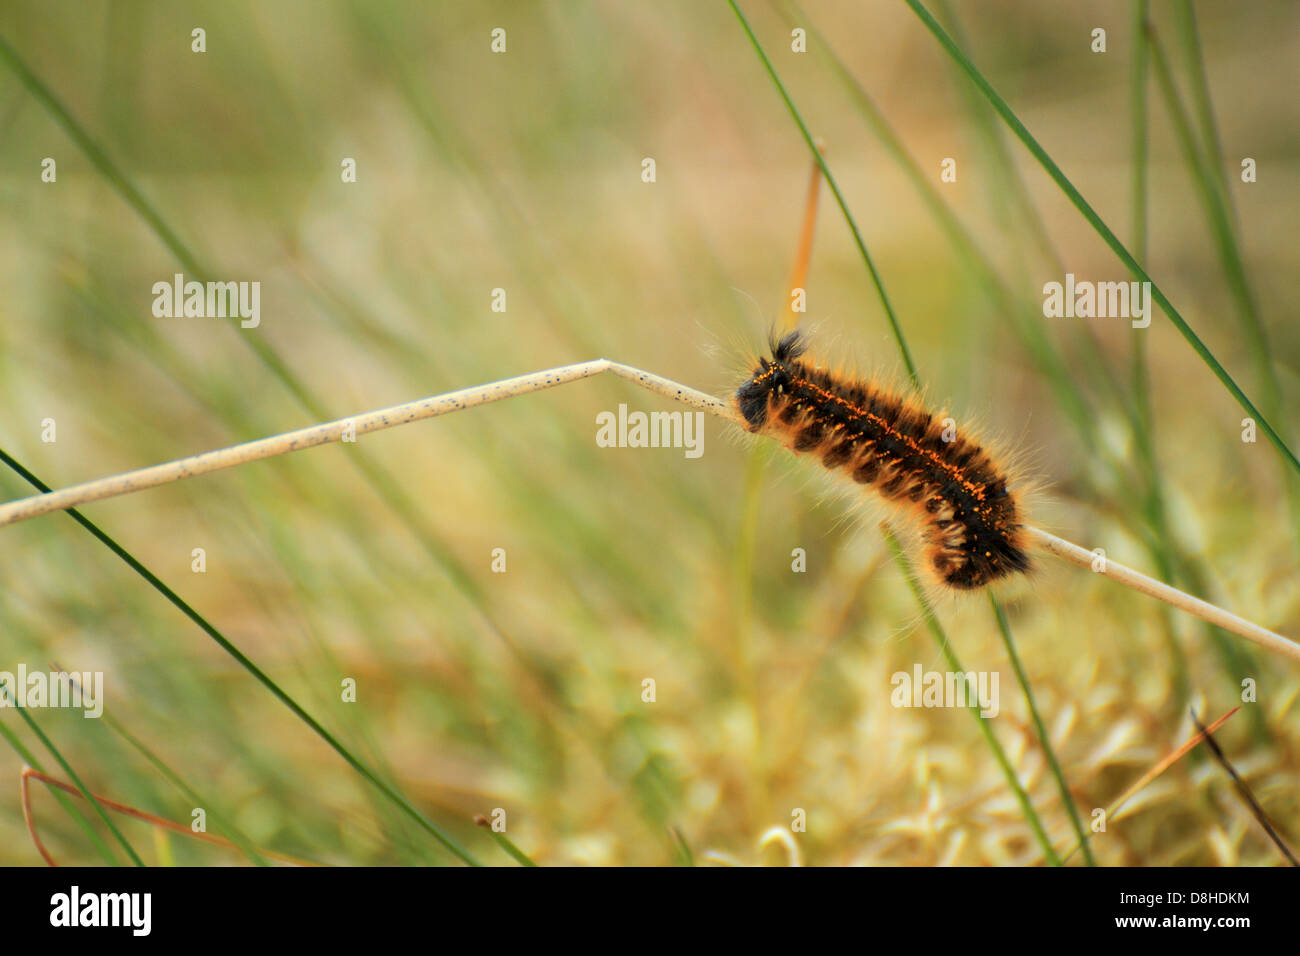 furry caterpillar climbing a reed Stock Photo